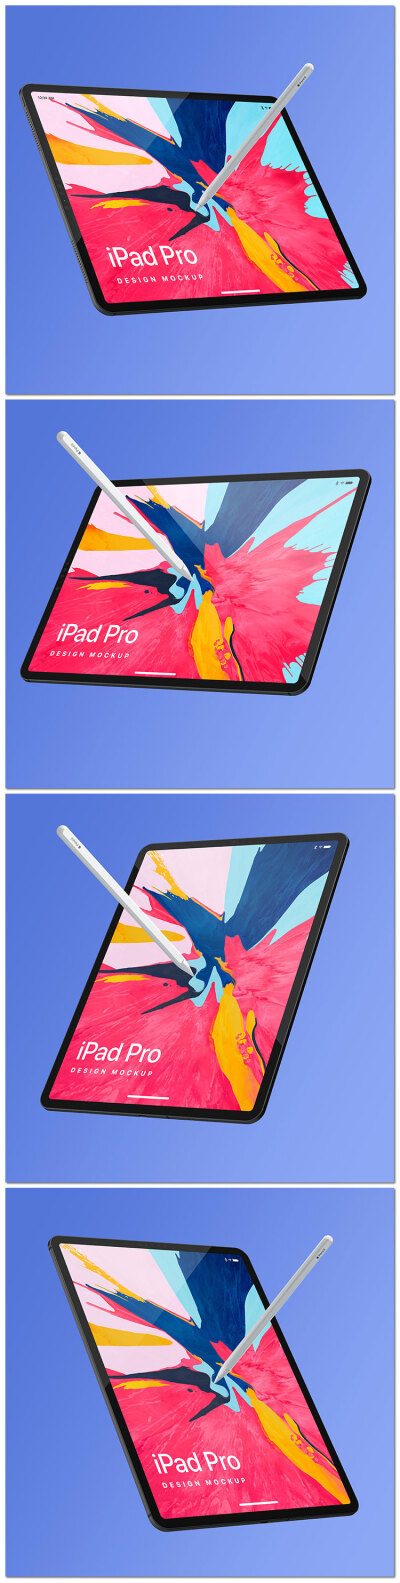 苹果平板电脑iPad Pro产品摄影展示样机贴图海报psd模板素材设计